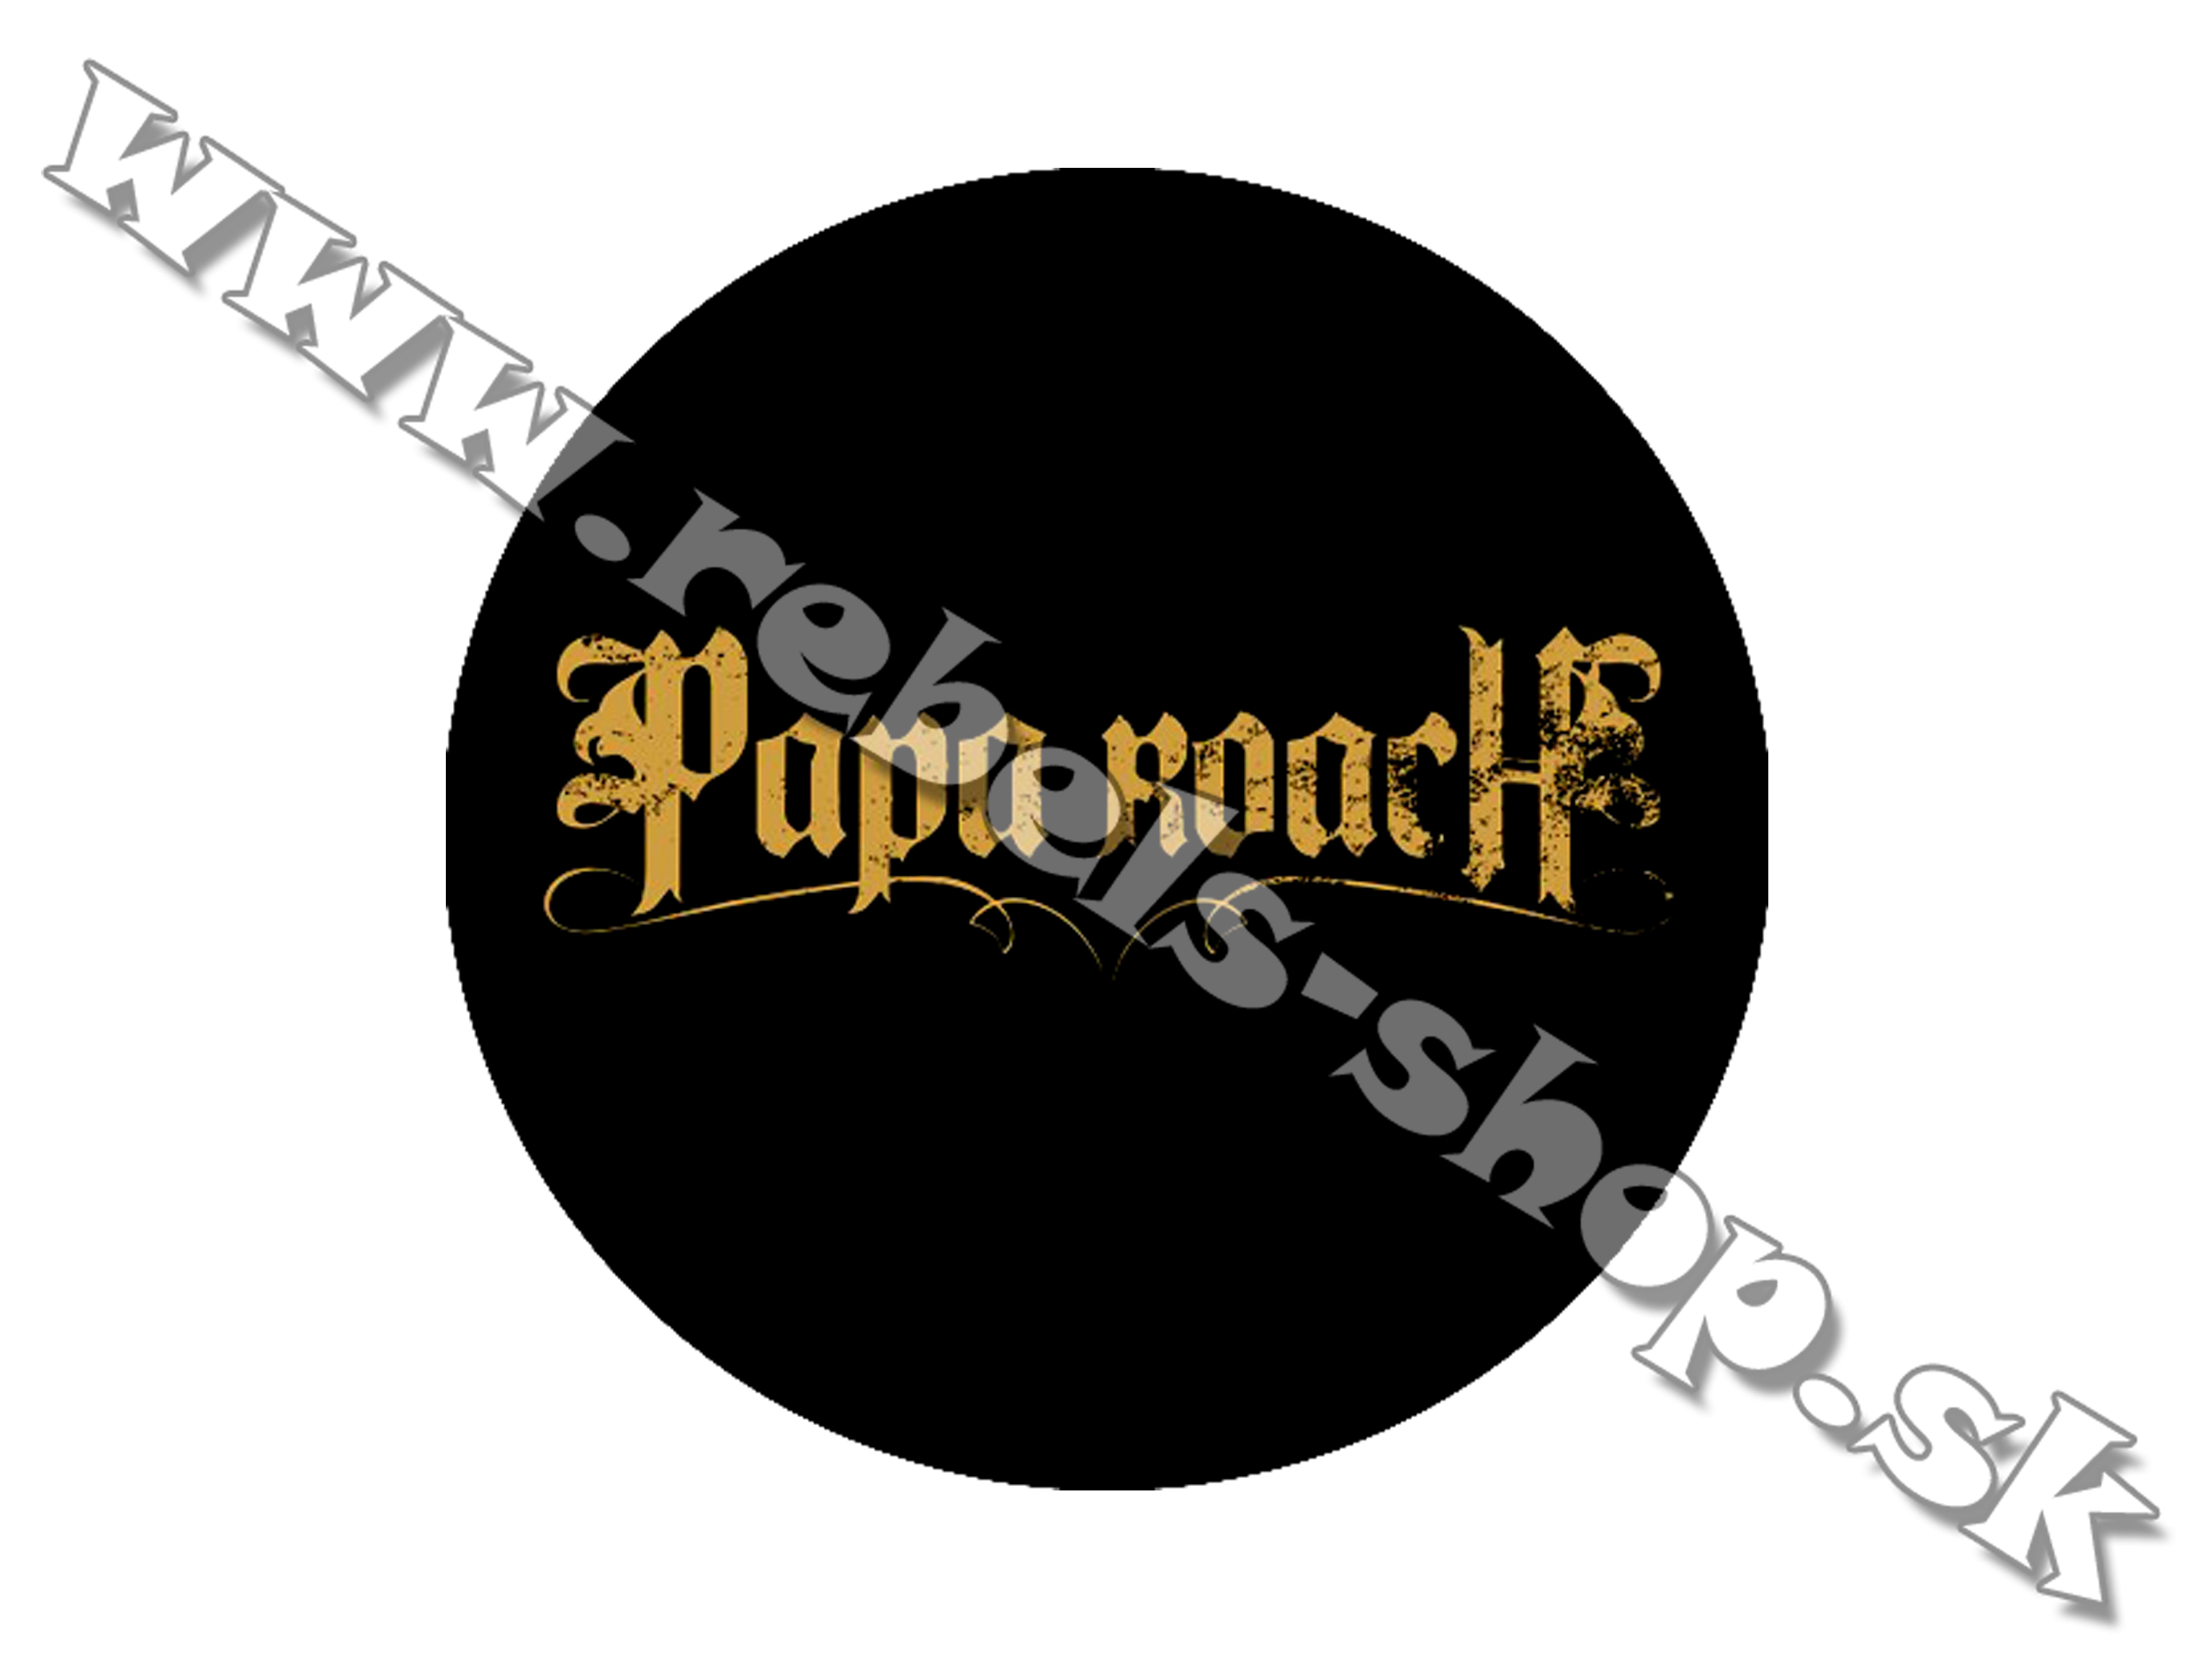 Odznak "Papa Roach"